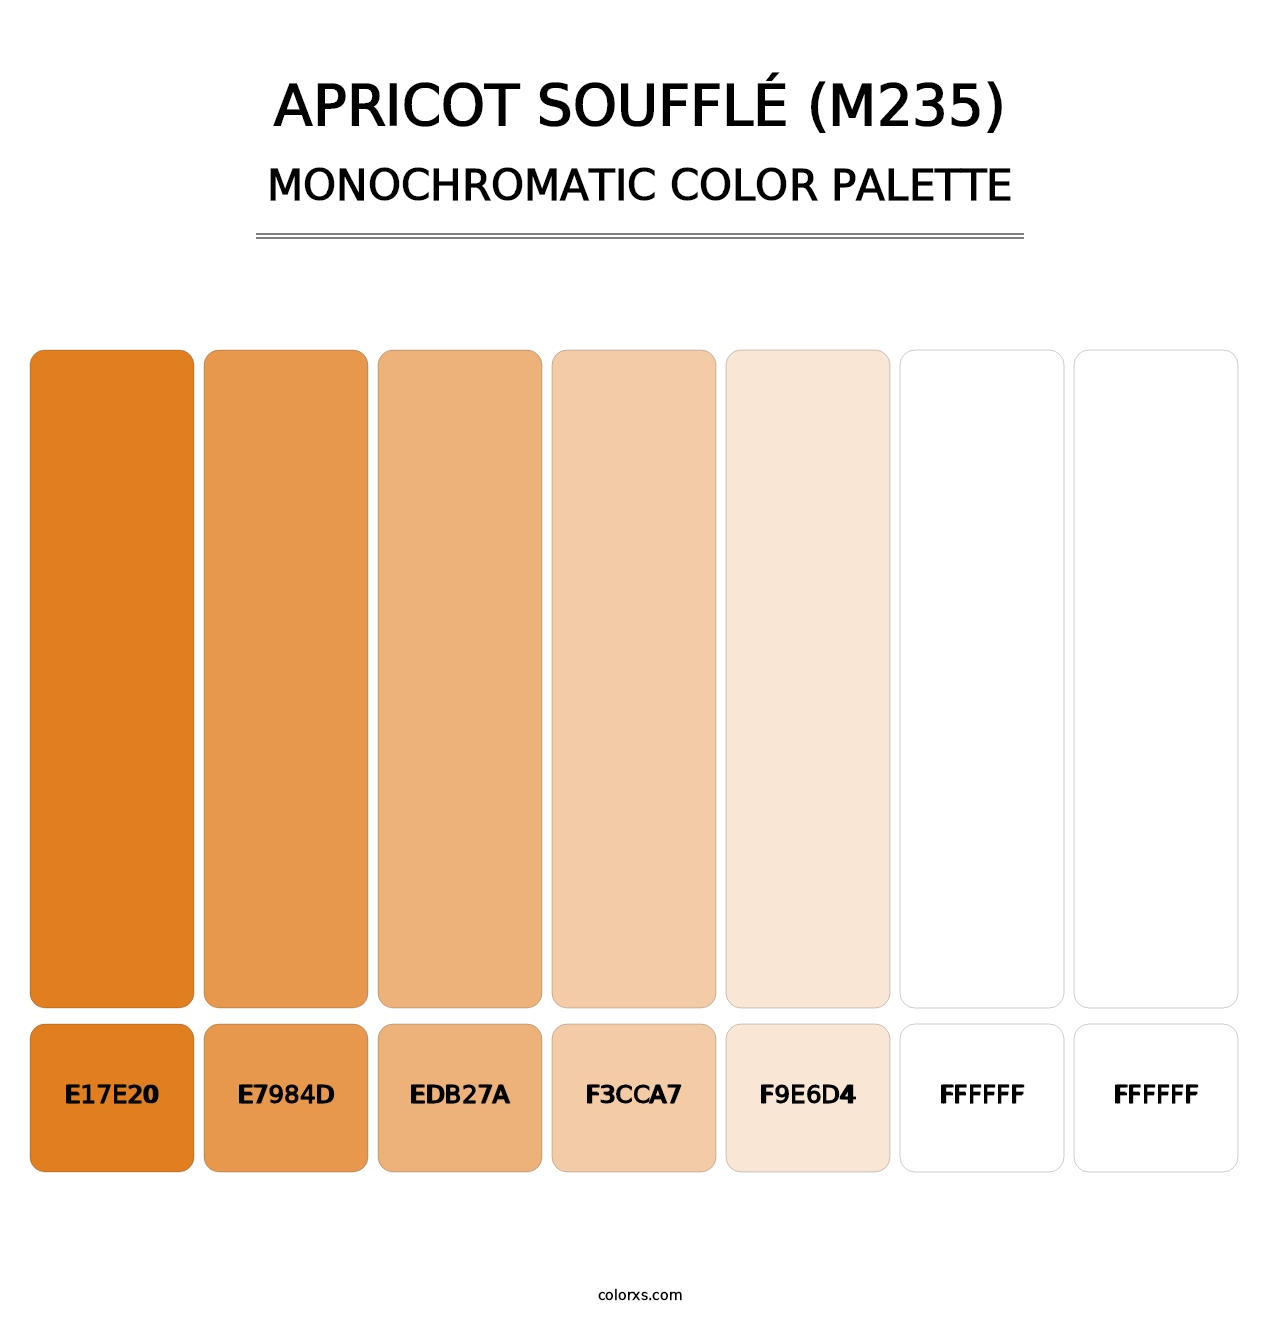 Apricot Soufflé (M235) - Monochromatic Color Palette